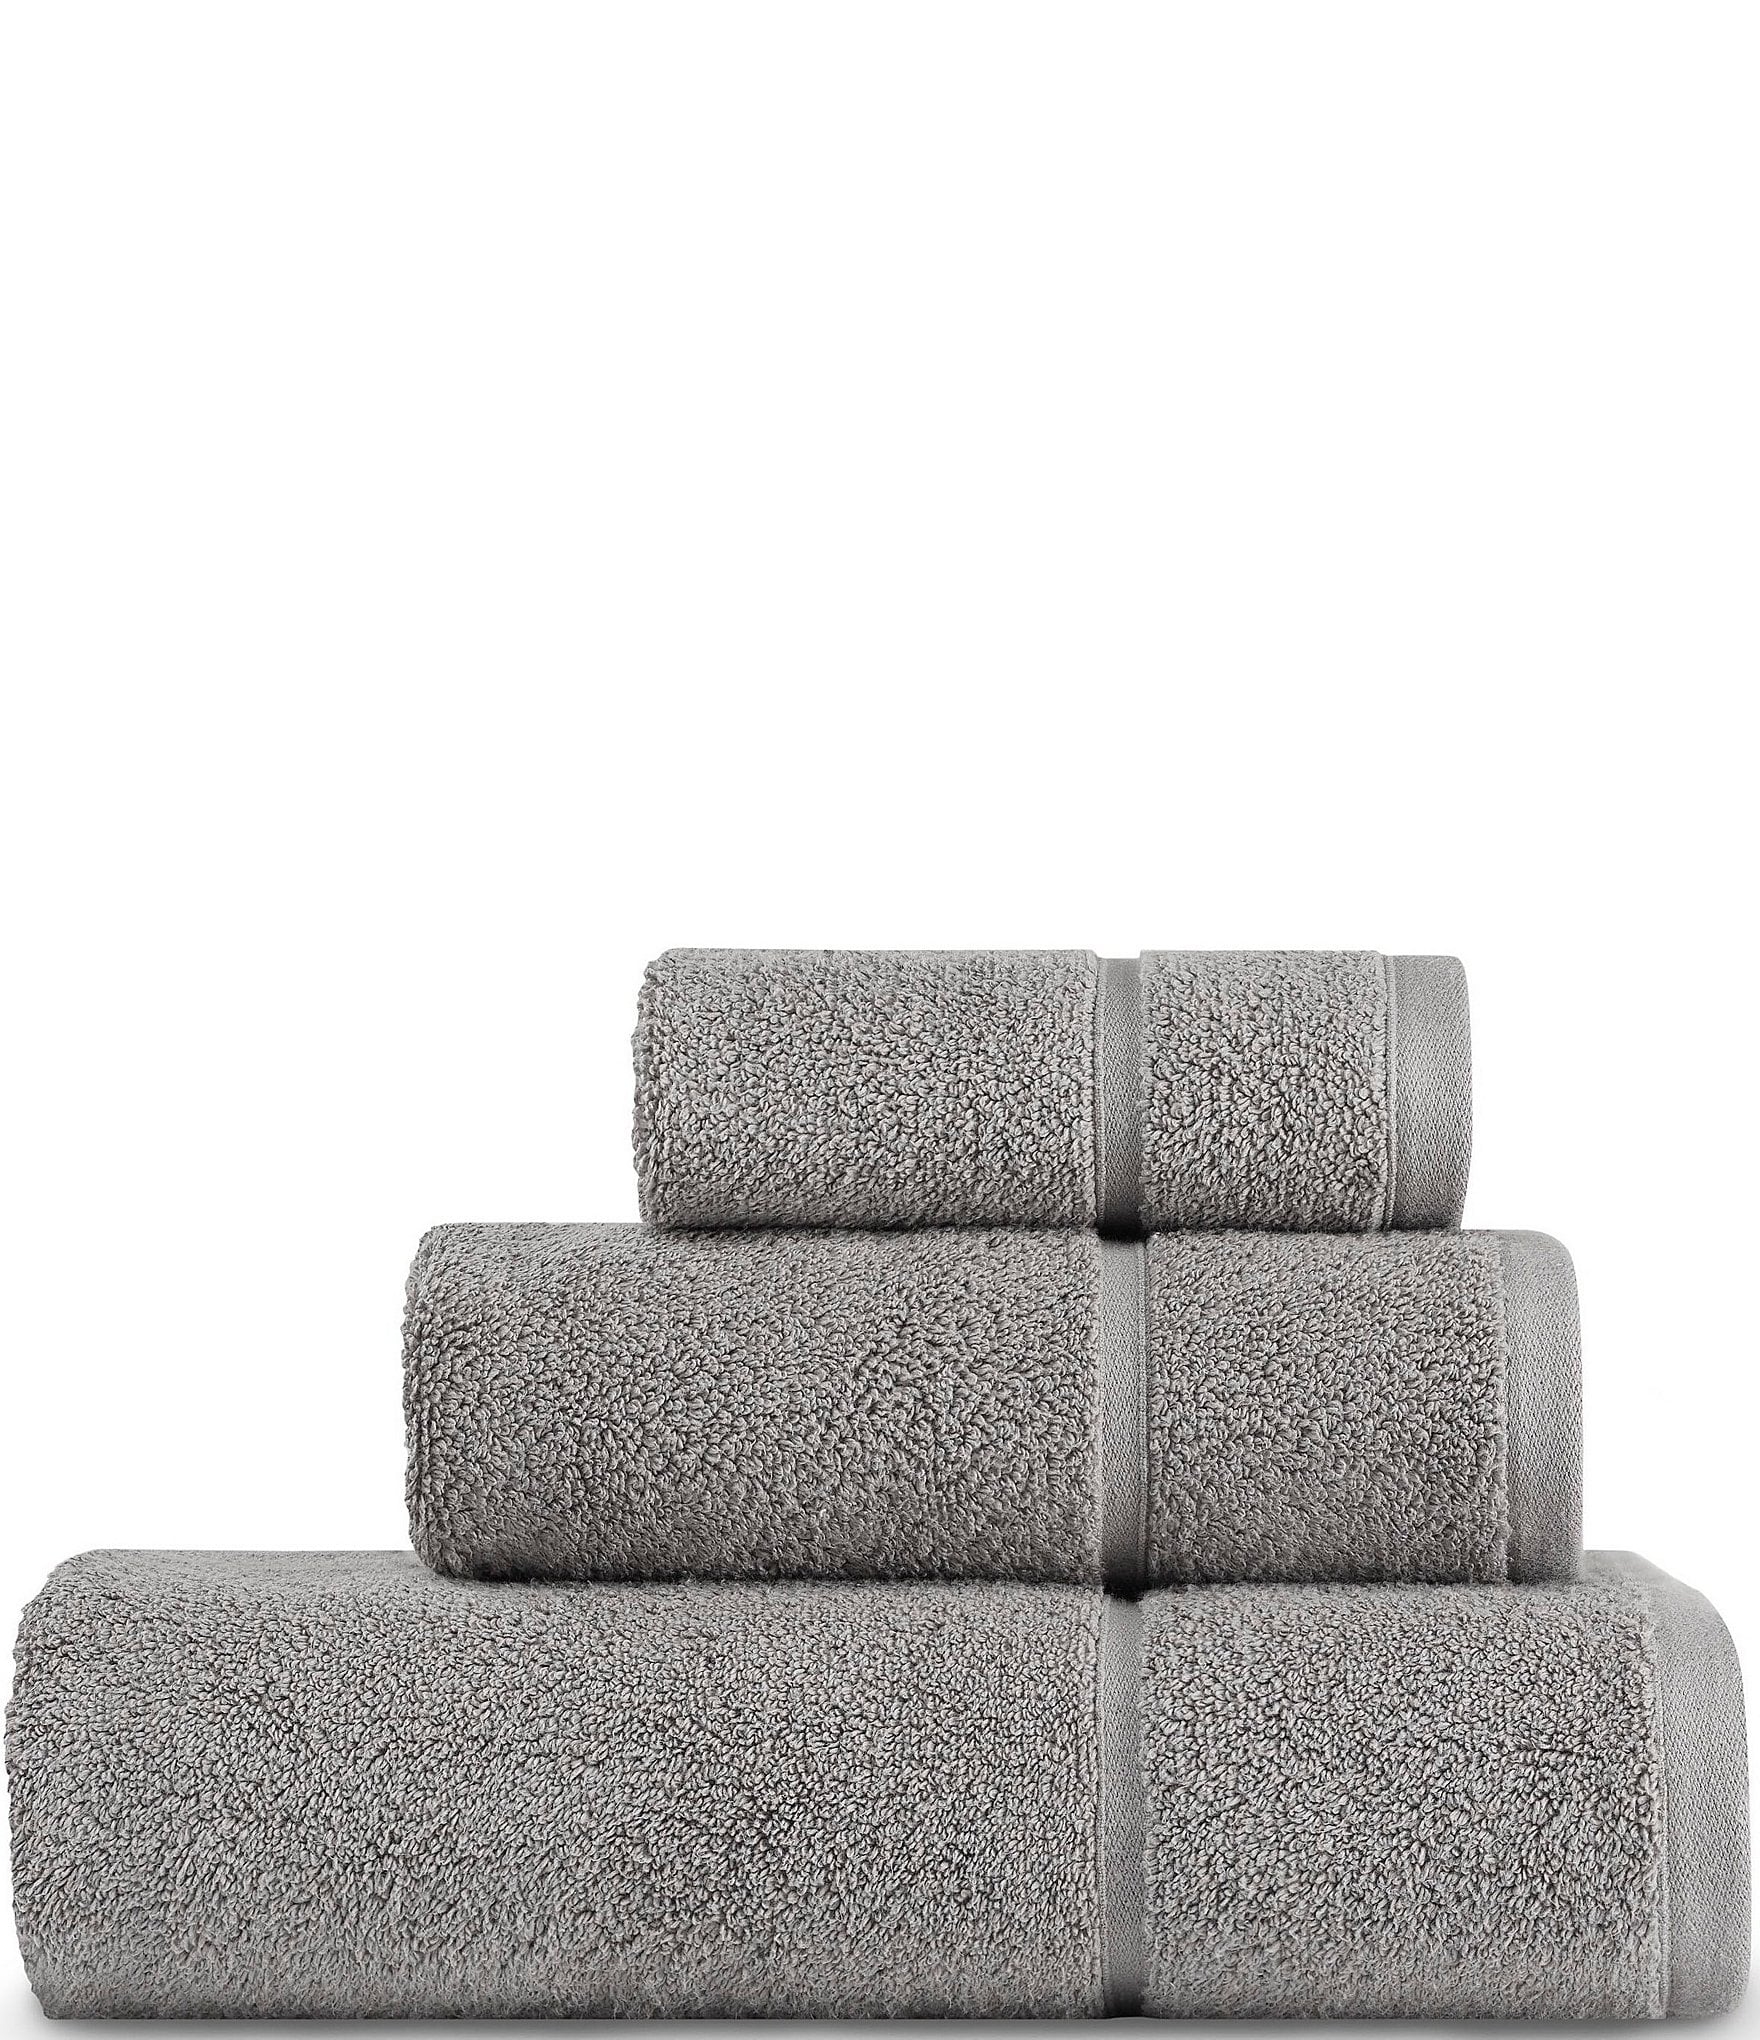 Vera Wang Modern Lux 6-Piece Towel Set